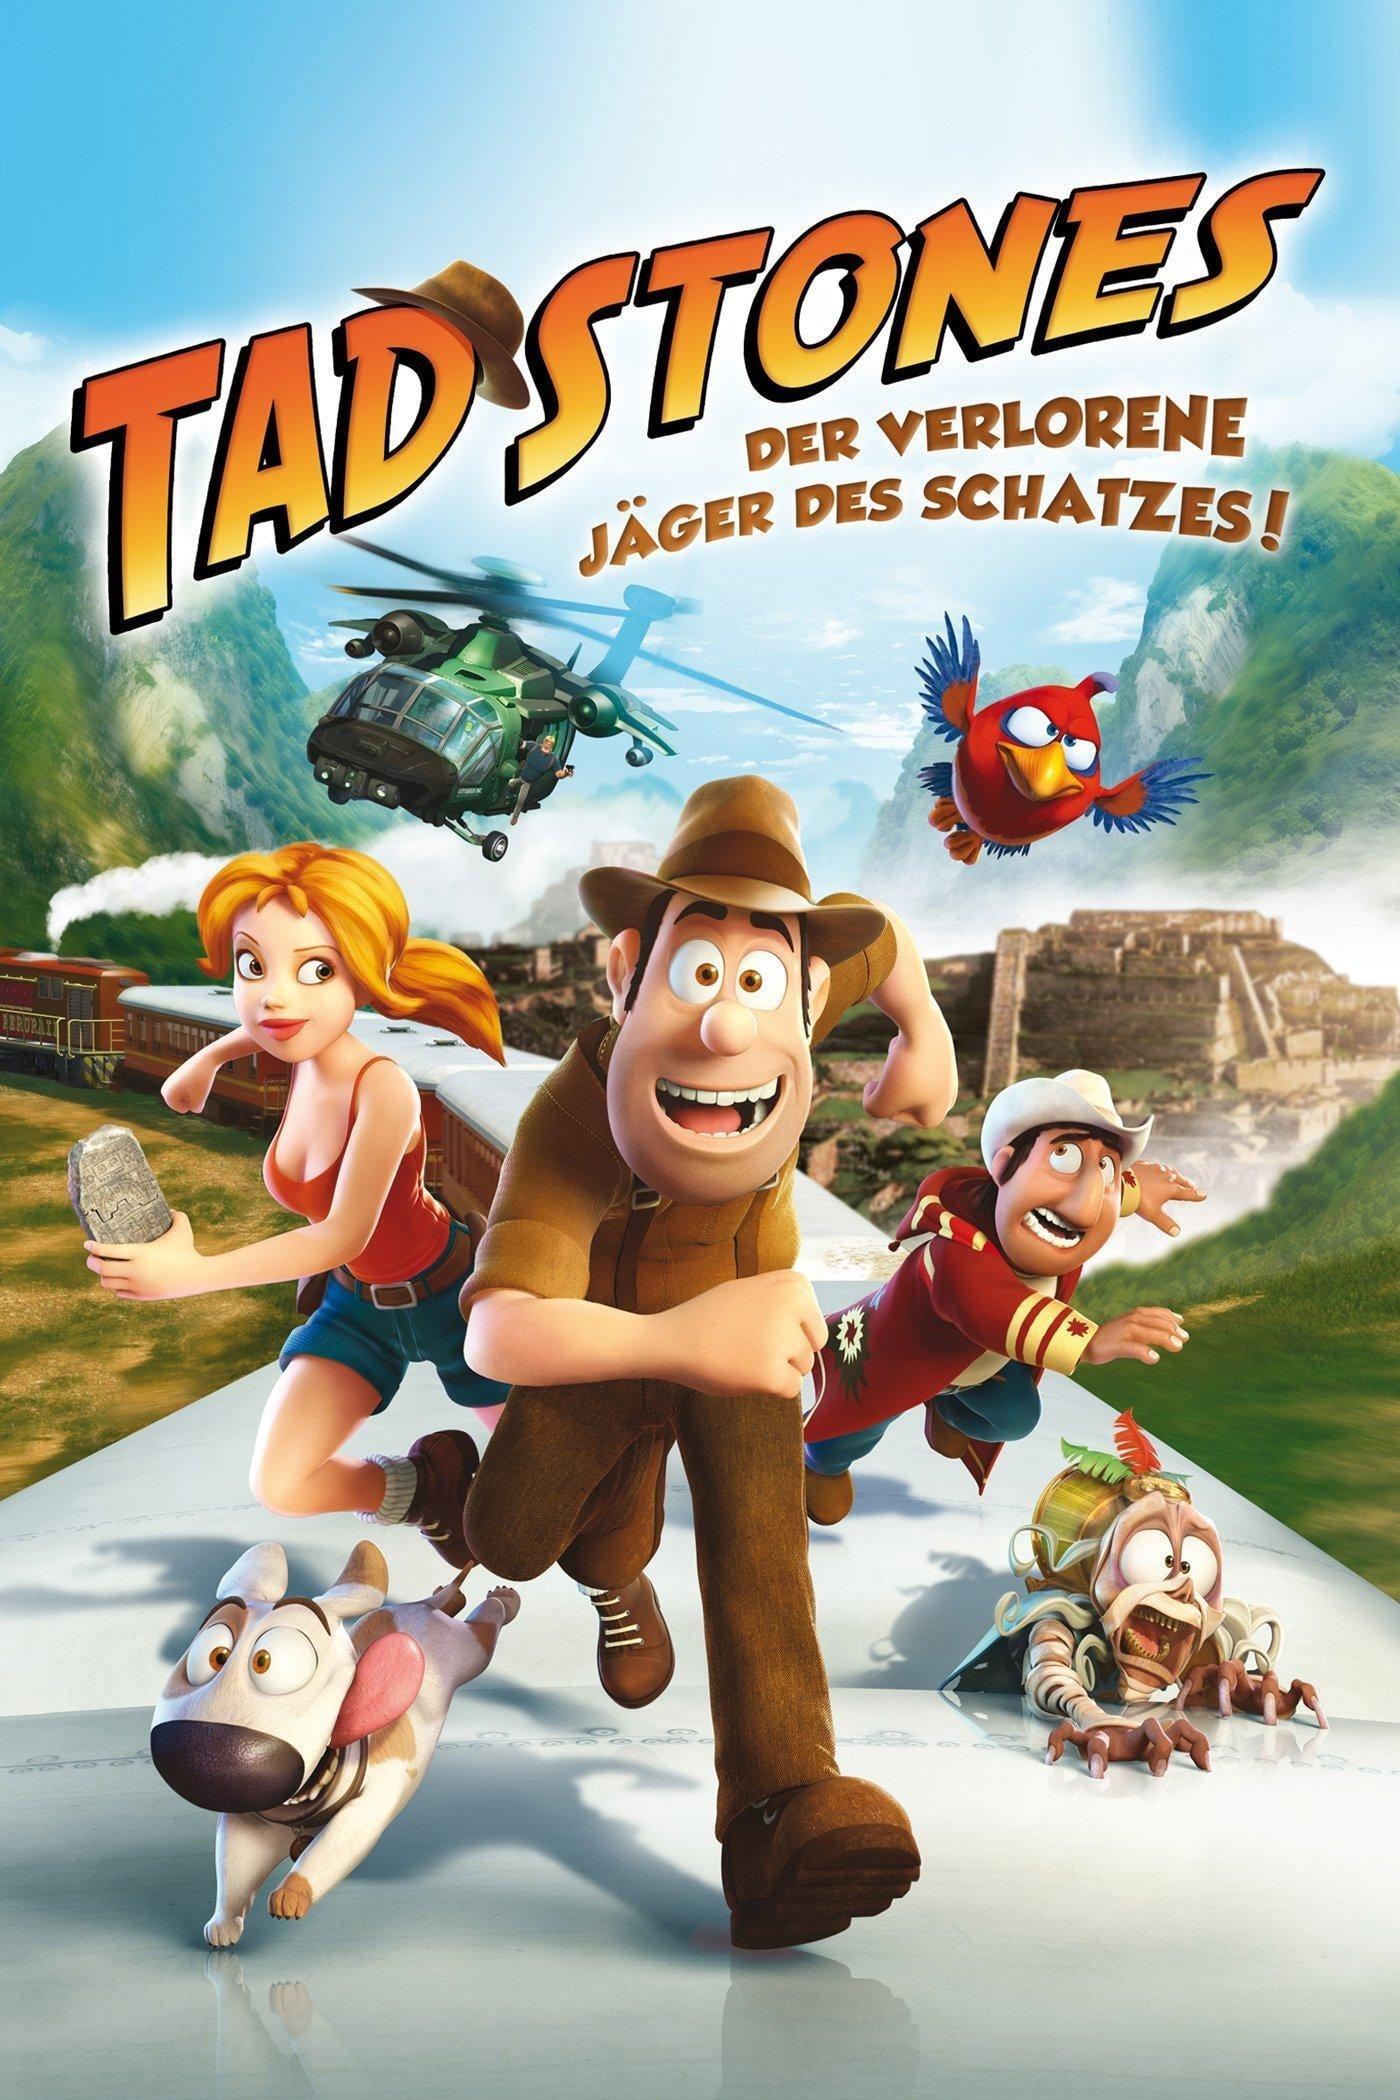 Tad Stones - Der verlorene Jäger des Schatzes! poster